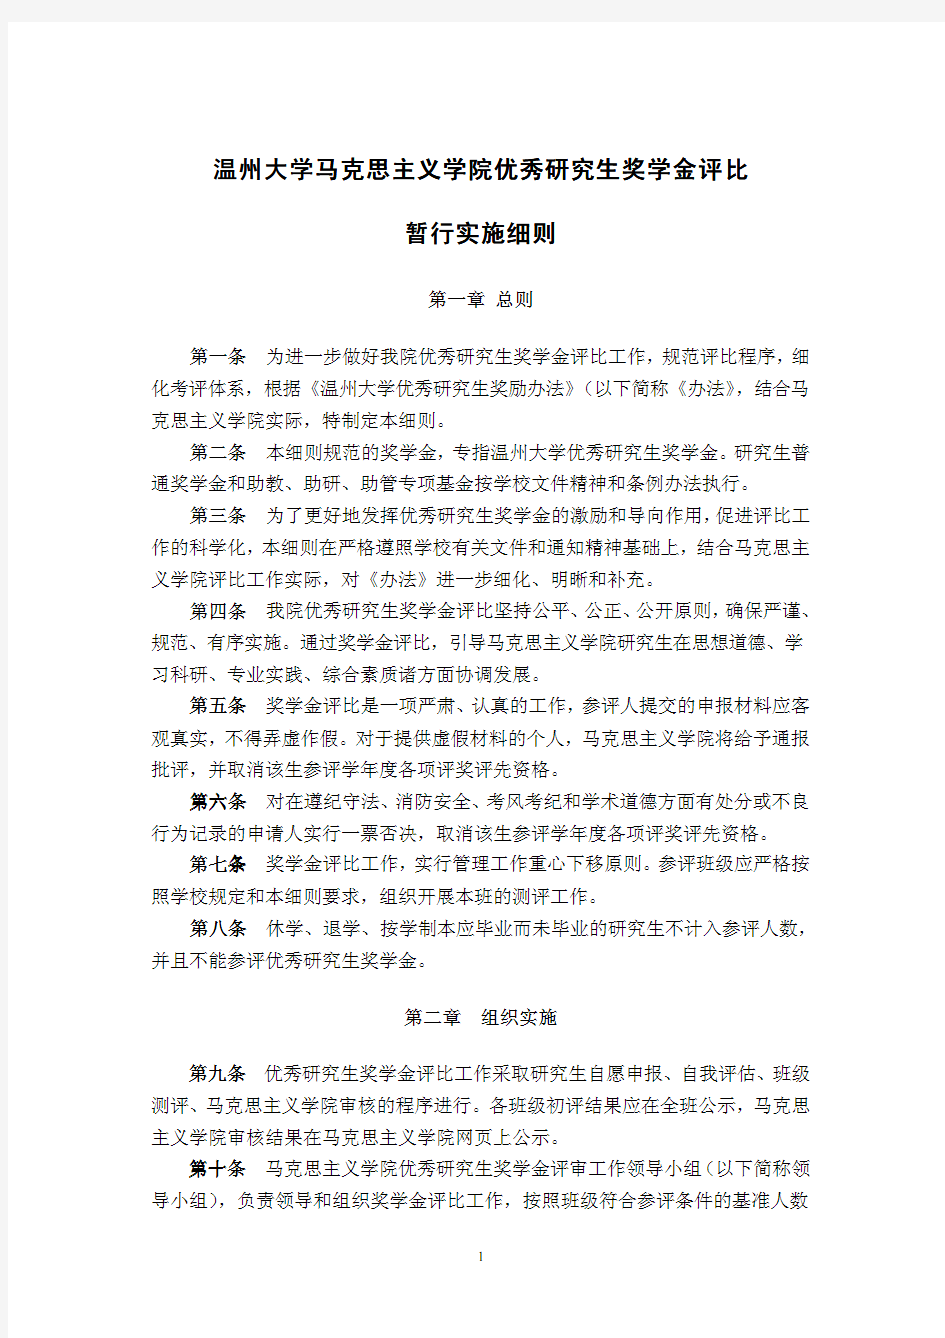 武汉大学优秀研究生奖学金评选实施细则(试行)(2)